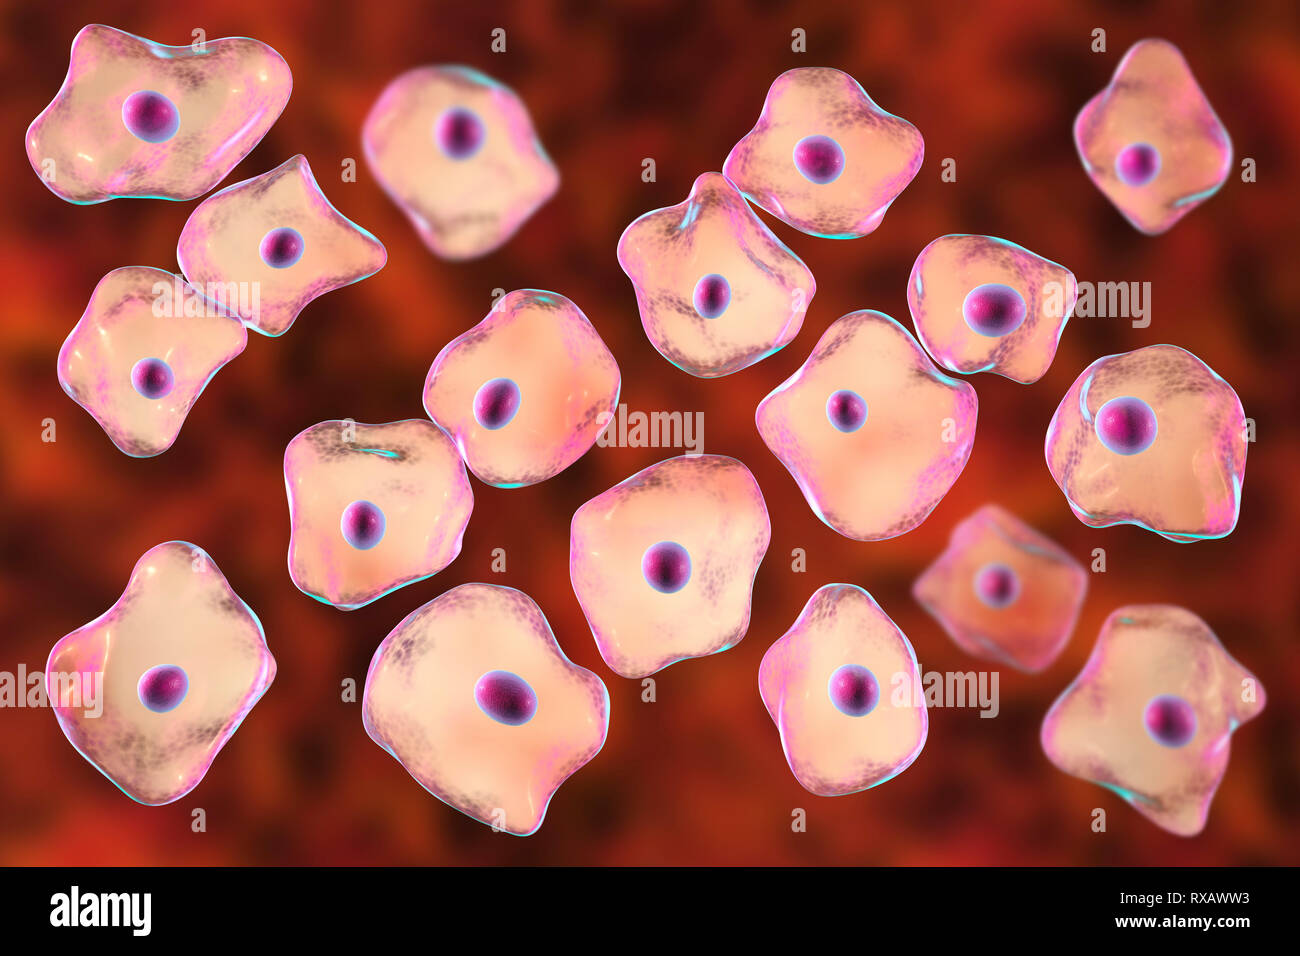 Squamous epithelium cells, illustration Stock Photo